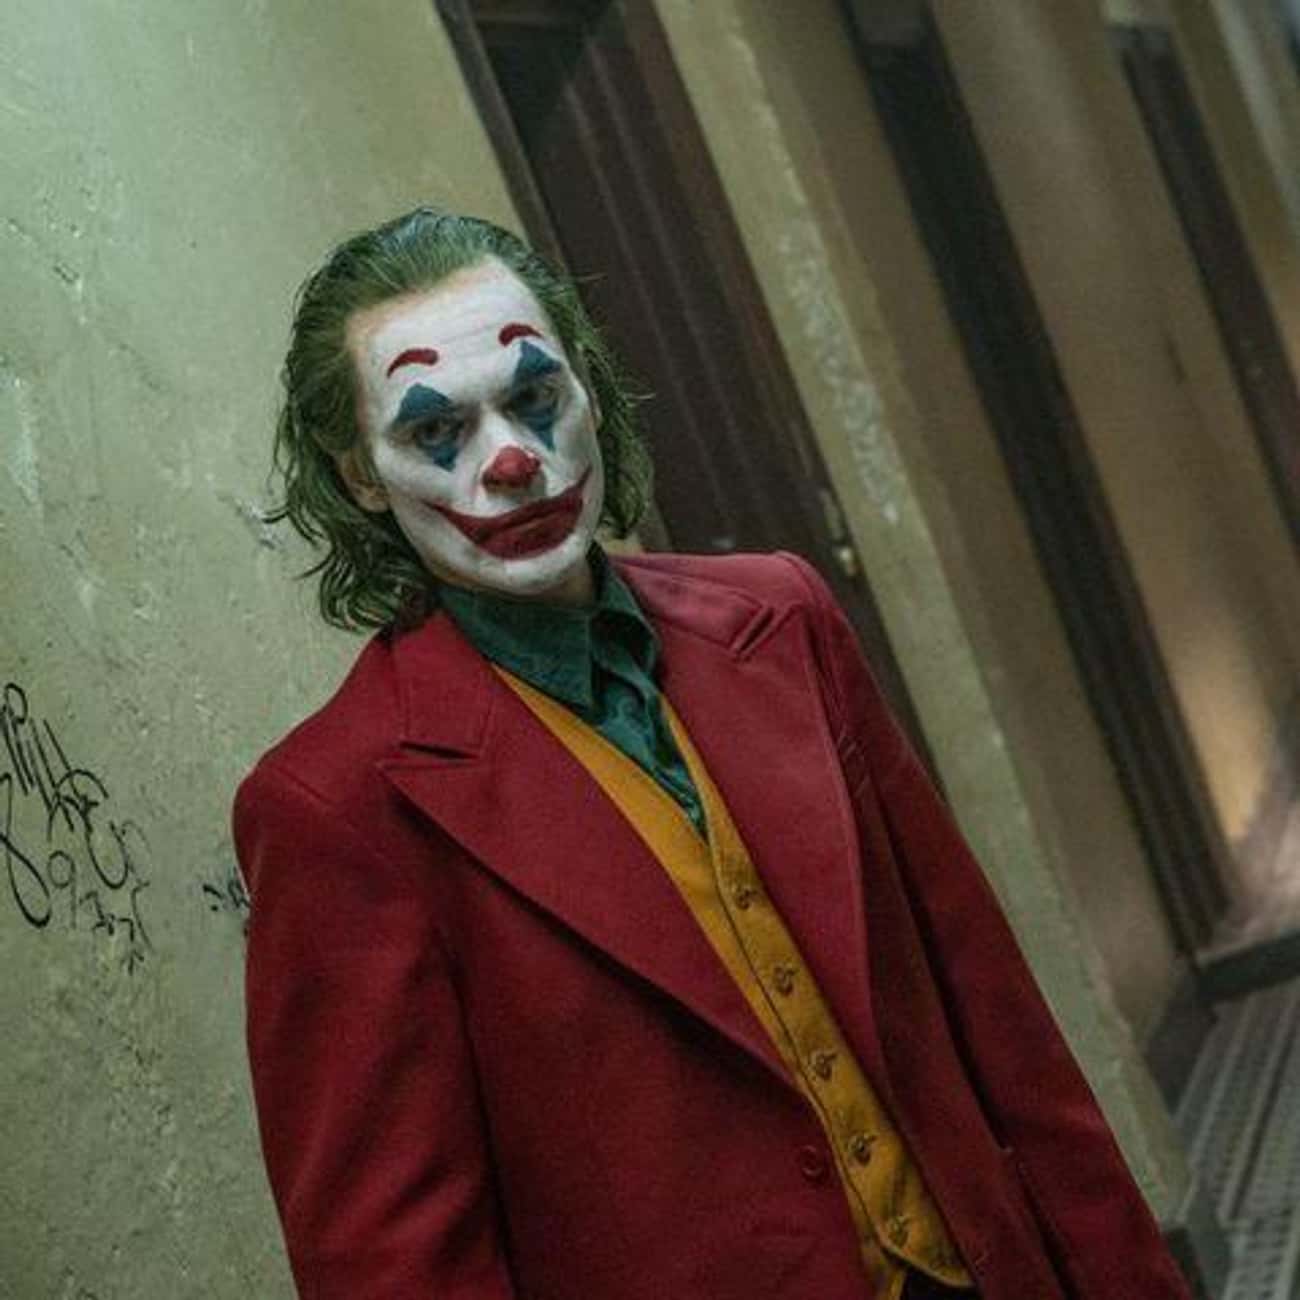 The 'Joker' Costume